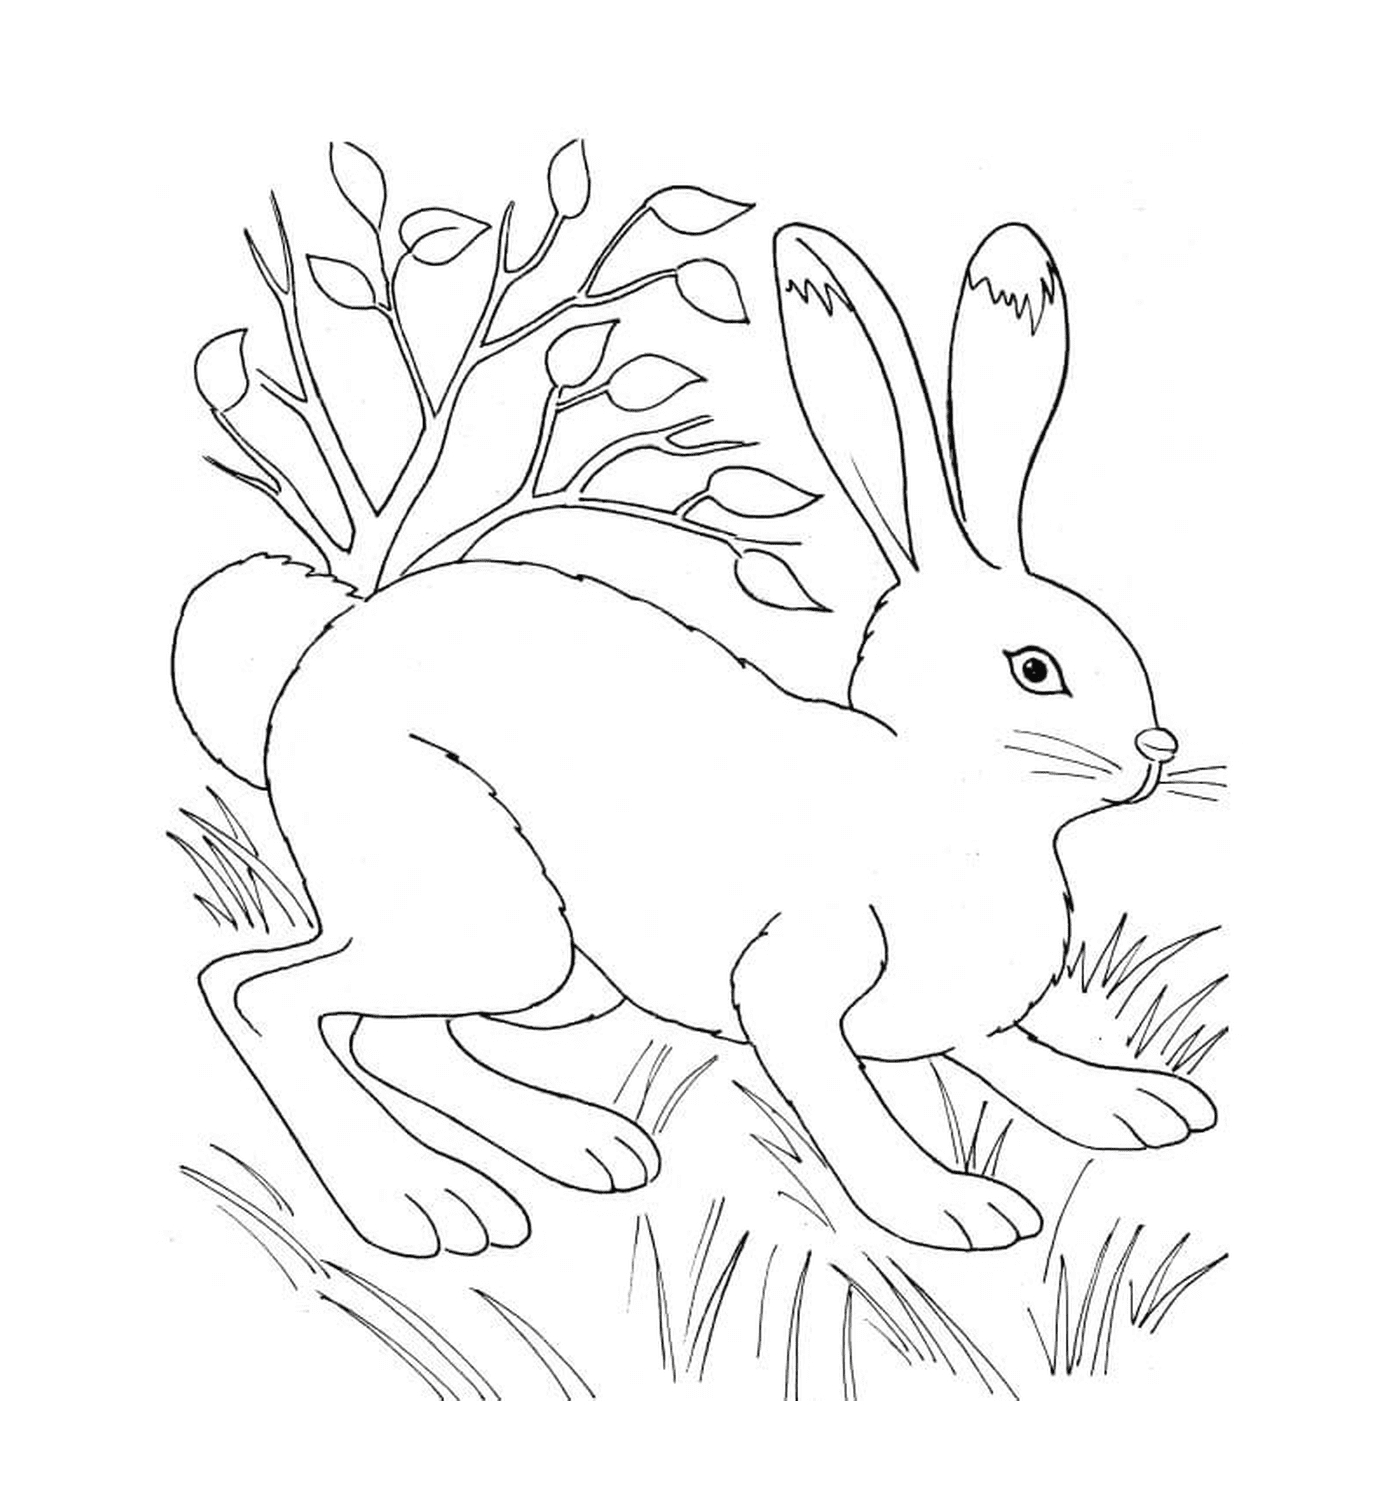  Conejo en la naturaleza cerca de la vegetación 